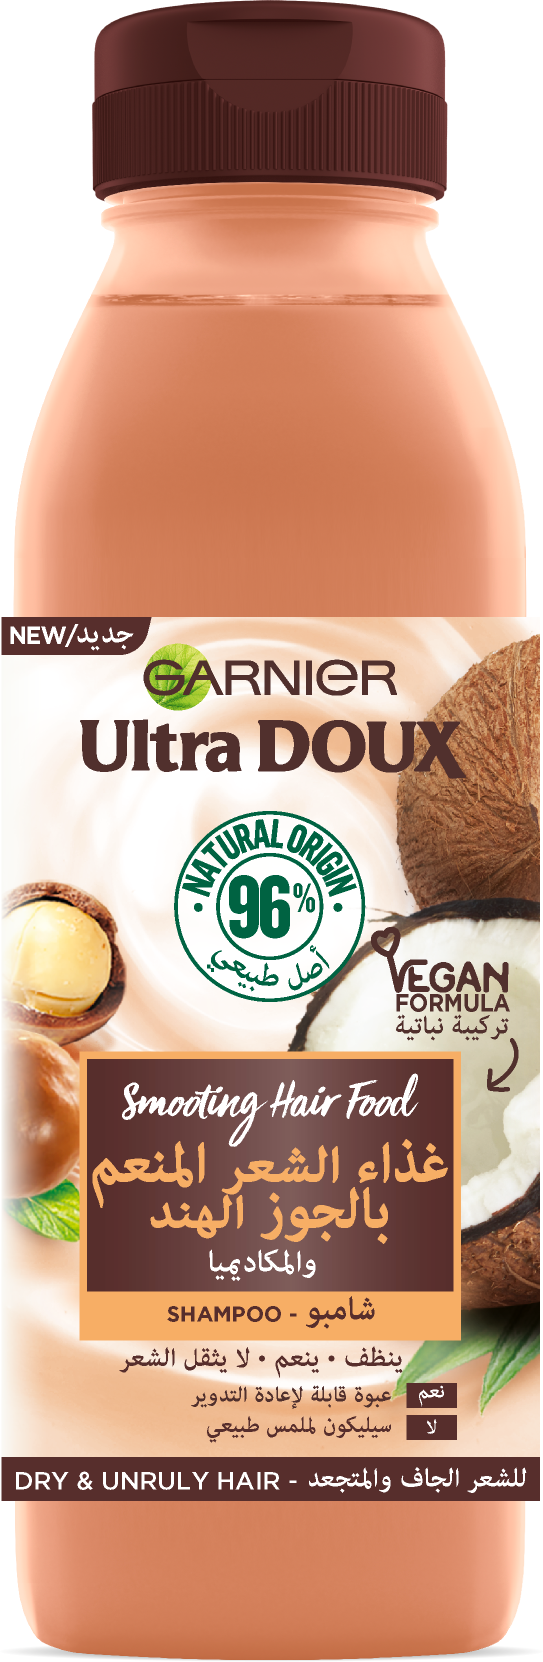 Garnier Ultra Doux - Hair Food - Shampooing lissant pour cheveux bouclés crépus - 350ml